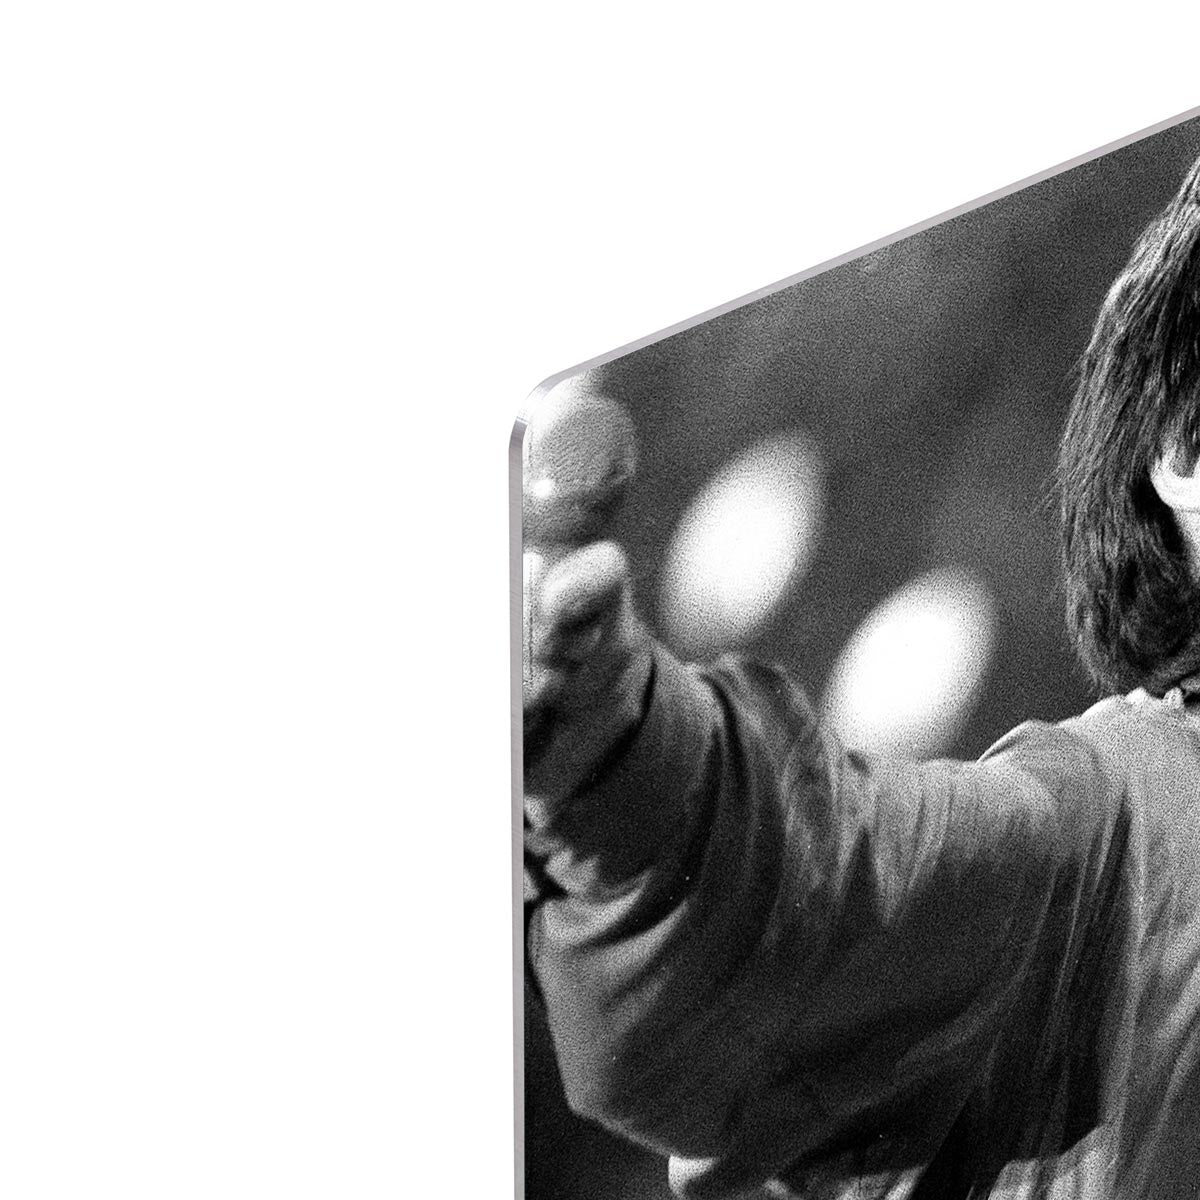 Mick Jagger arms up HD Metal Print